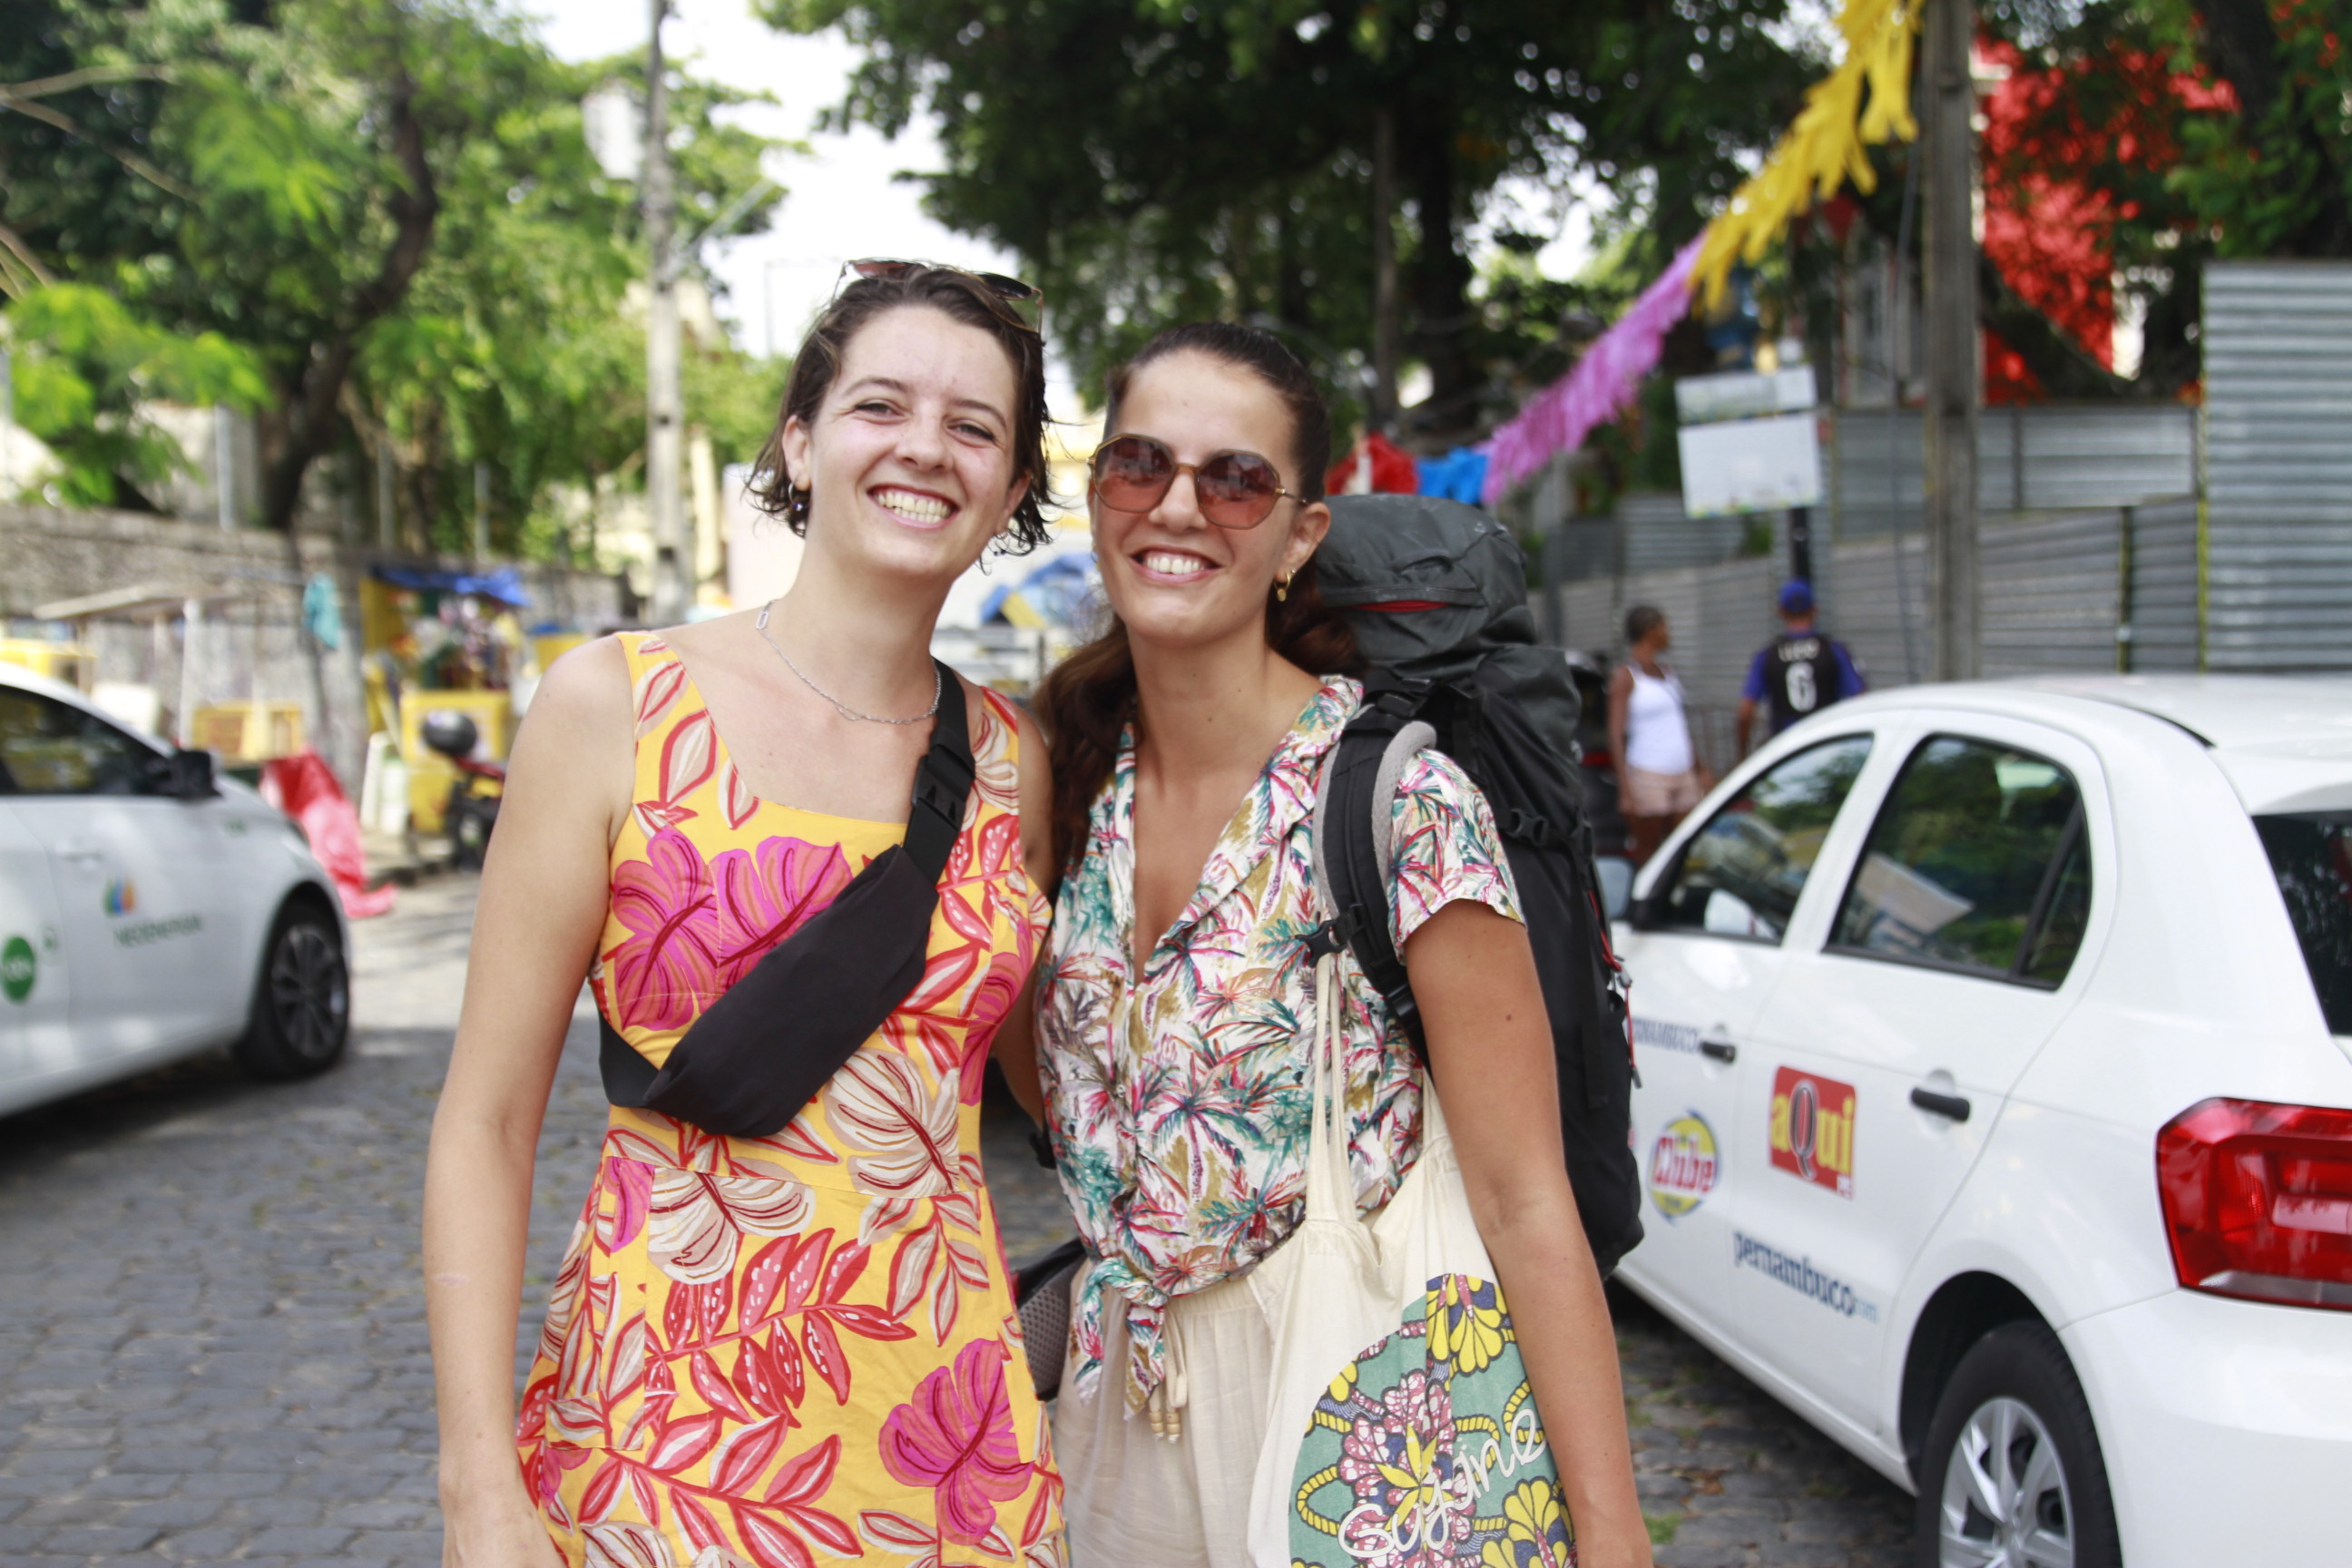 Julie Bilbault e Annaig Magnin vieram da França para prestigiar o carnaval de Pernambuco, esta é a primeira vez das amigas no Brasil (Rômulo Chico/DP)